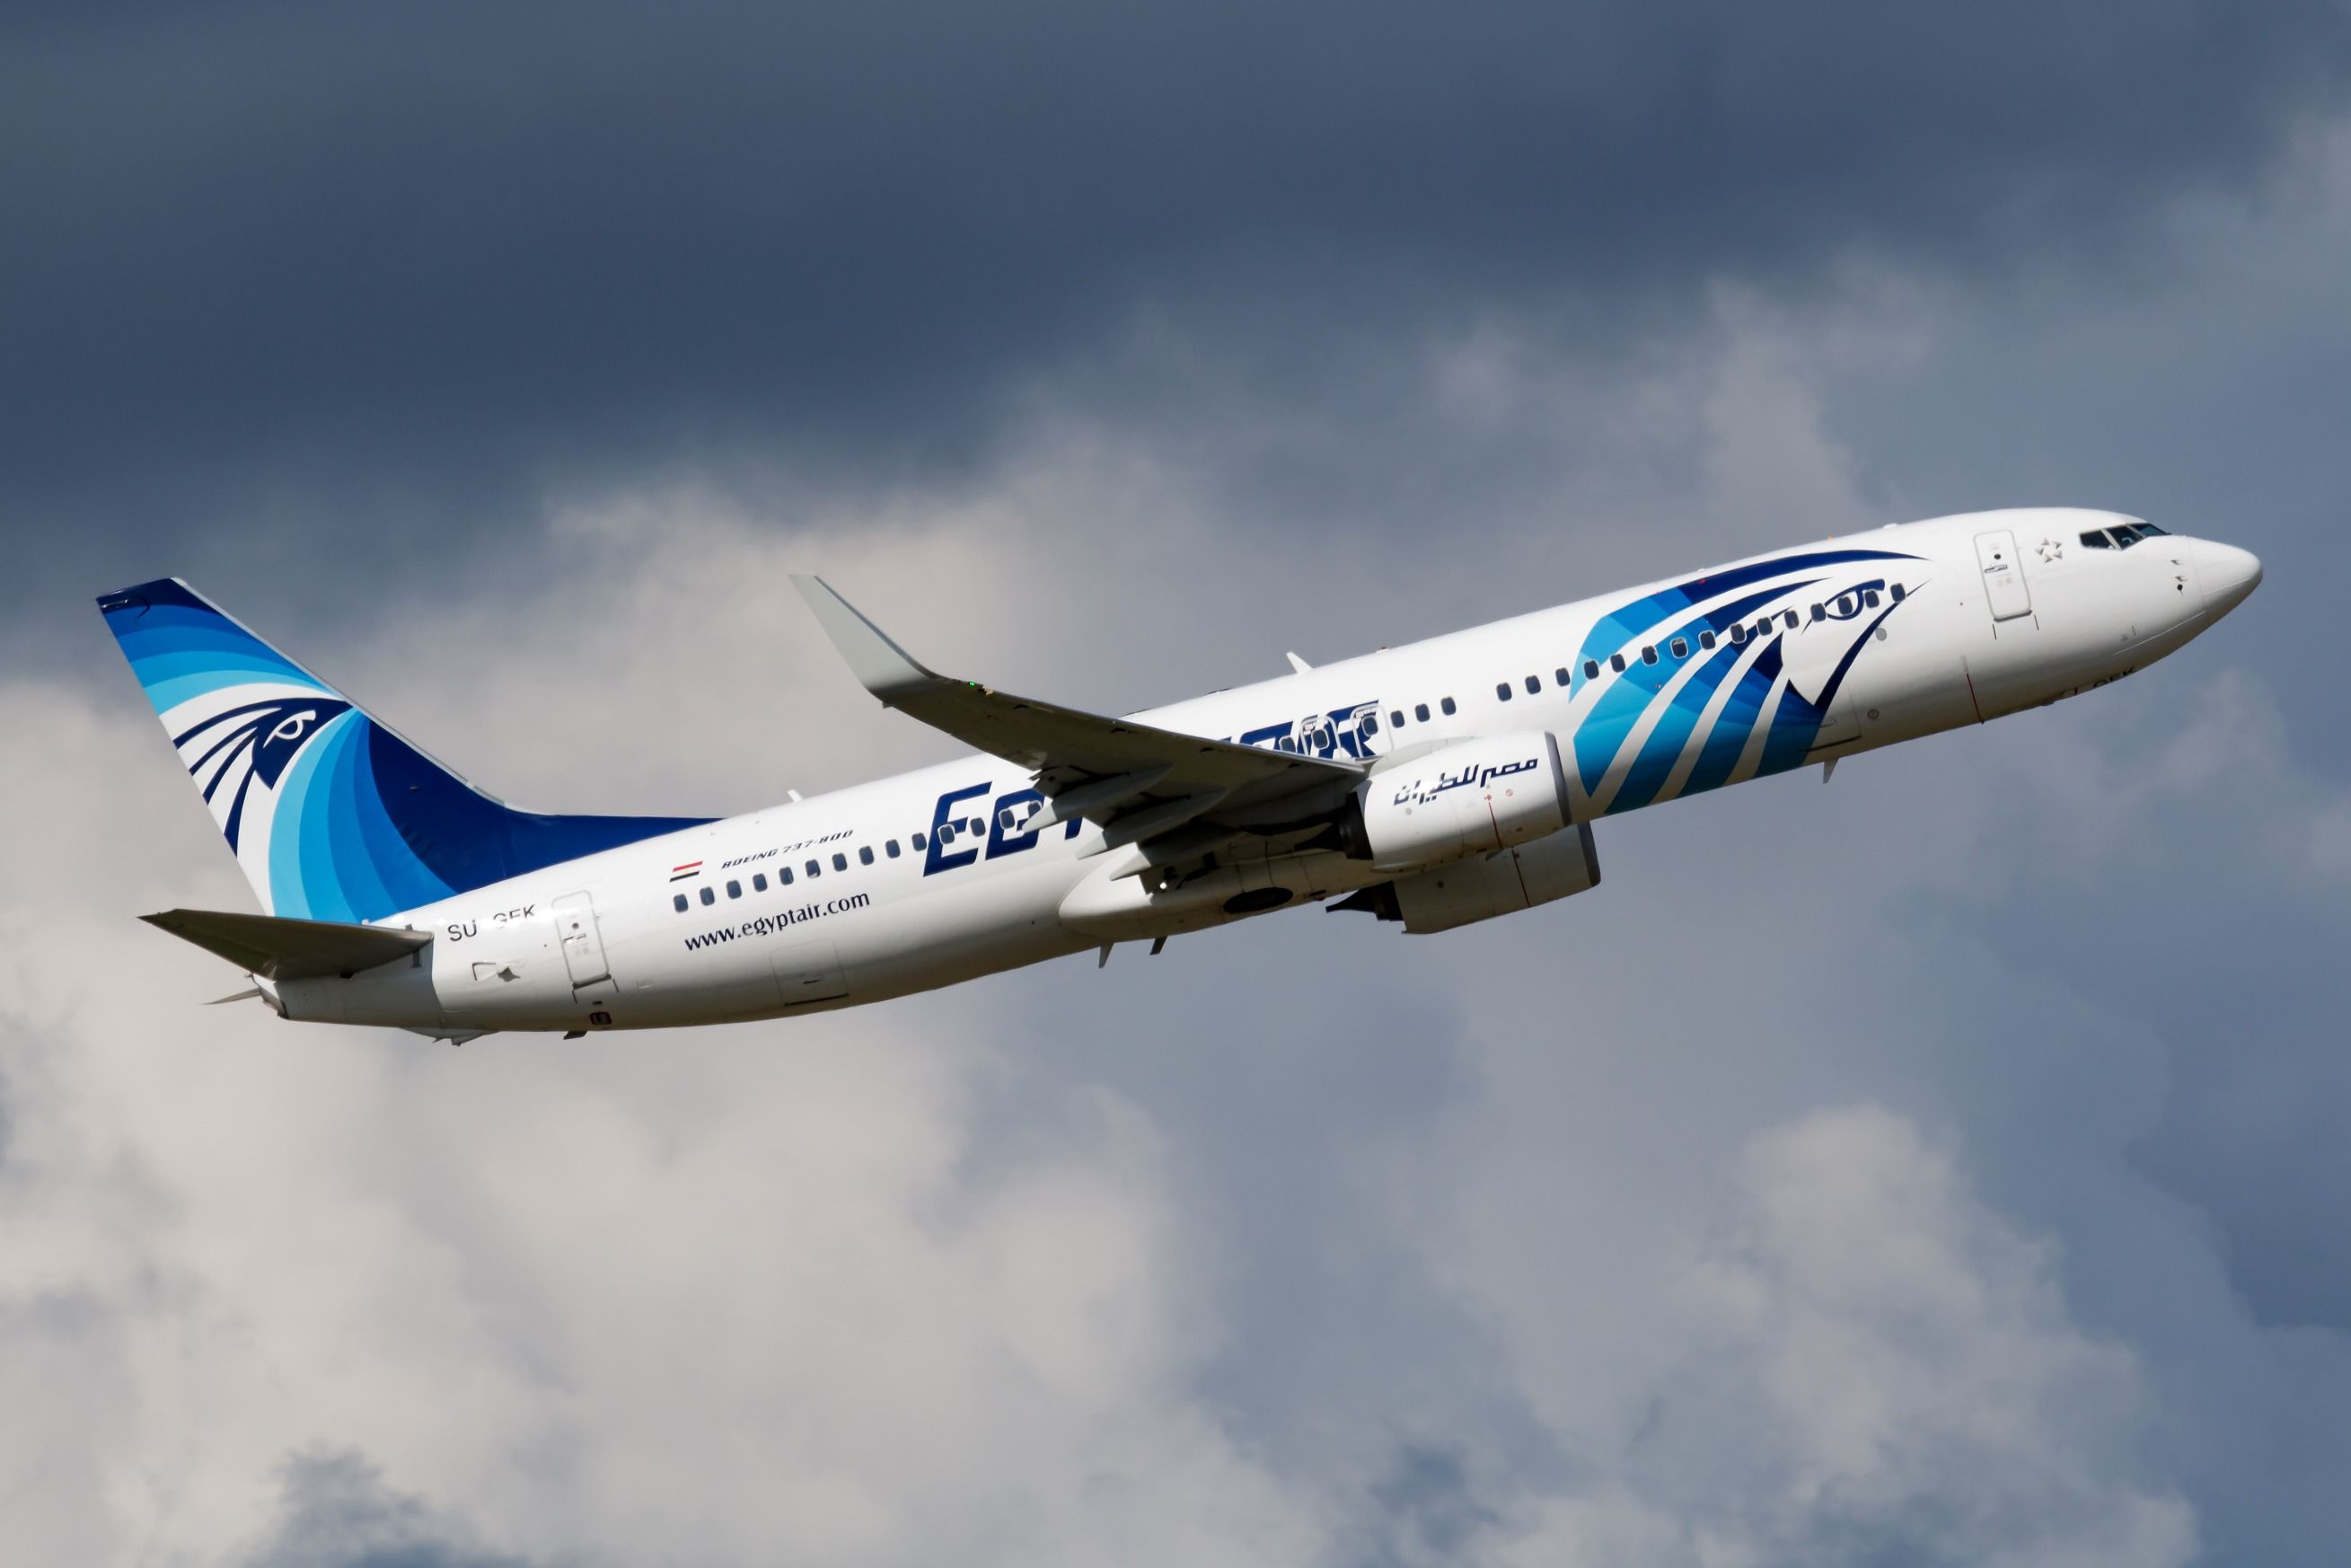 EgyptAir Boeing 737-800 departing